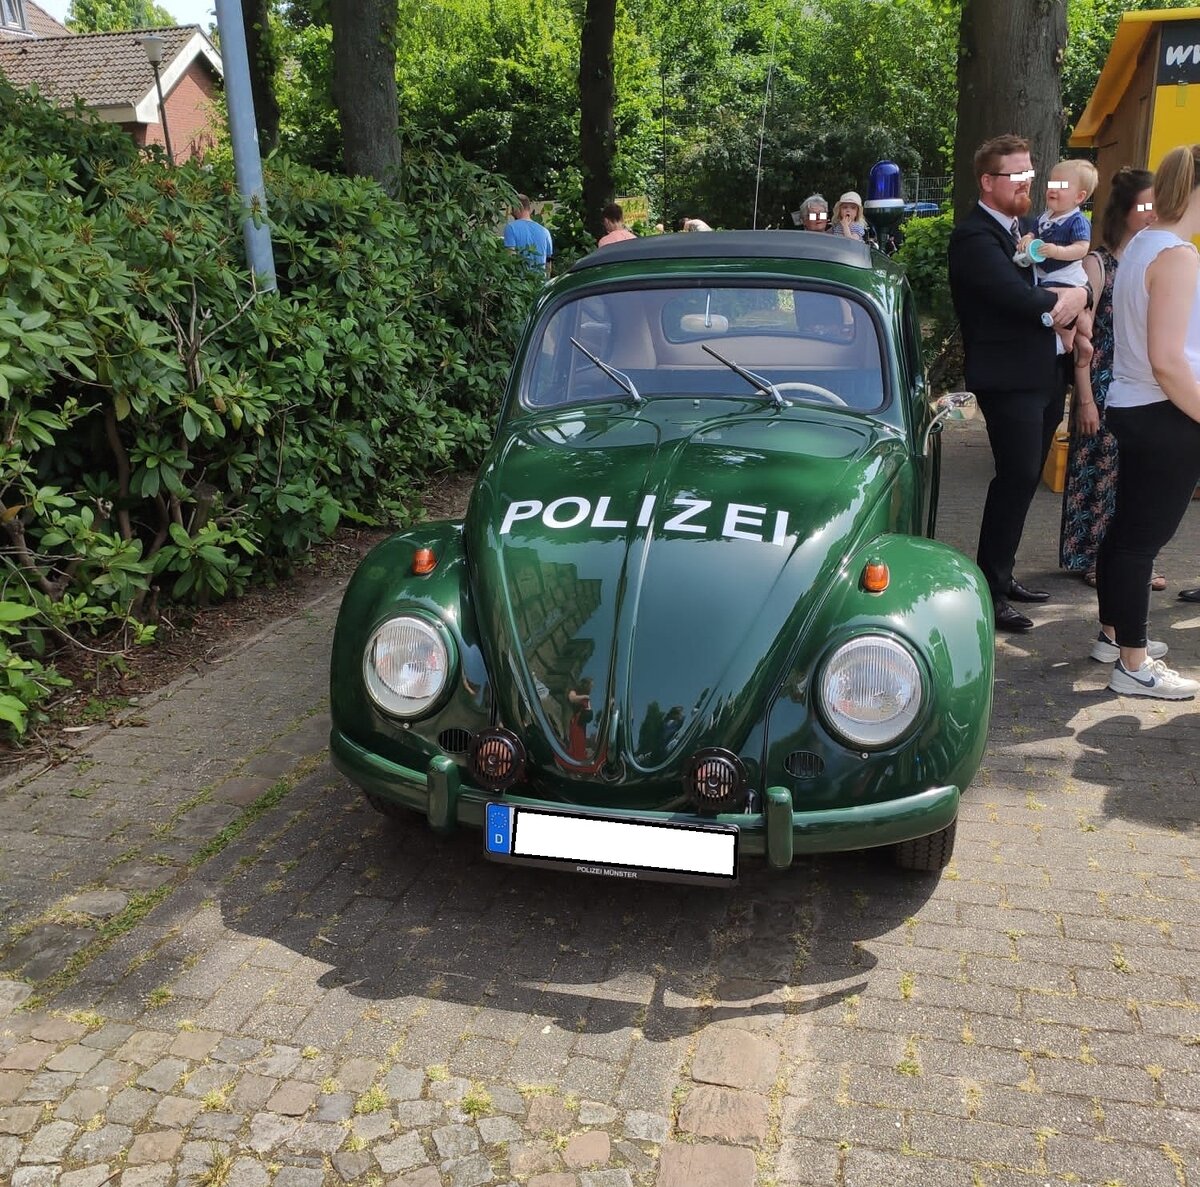 VW Käfer aus dem Jahr 1960 als Traditionsfahrzeug der Polizei Münster/Westfalen. Münster/Westfalen am 18.06.2022.